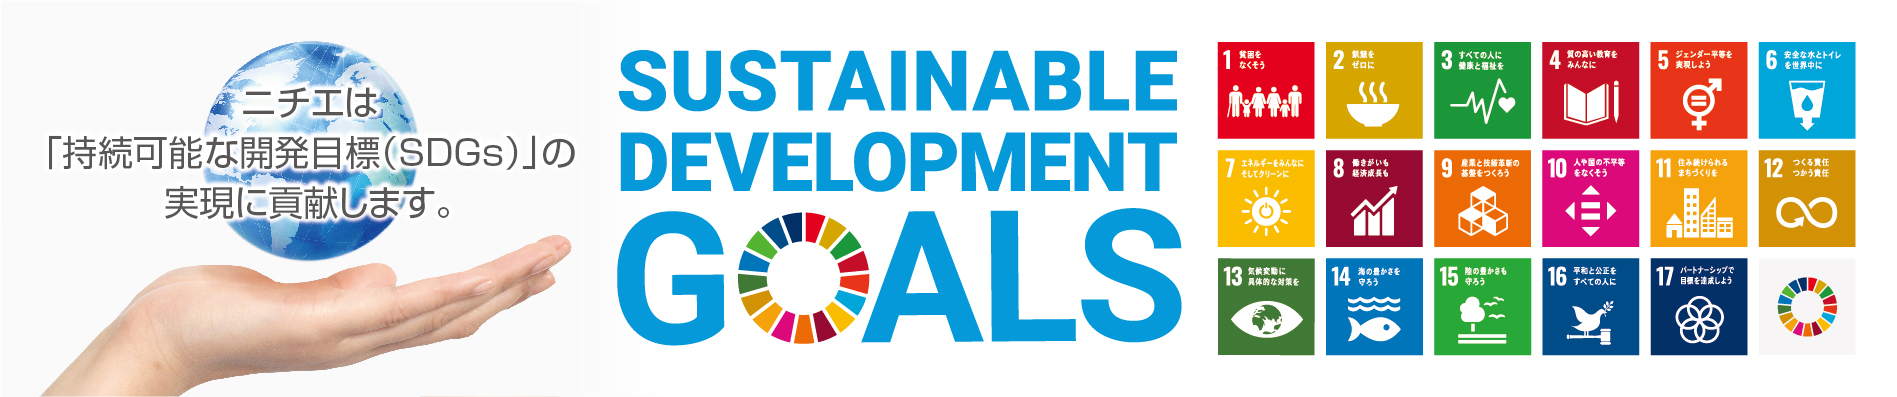 二チエは「持続可能な開発目標(SDGs)」の実現に貢献します。